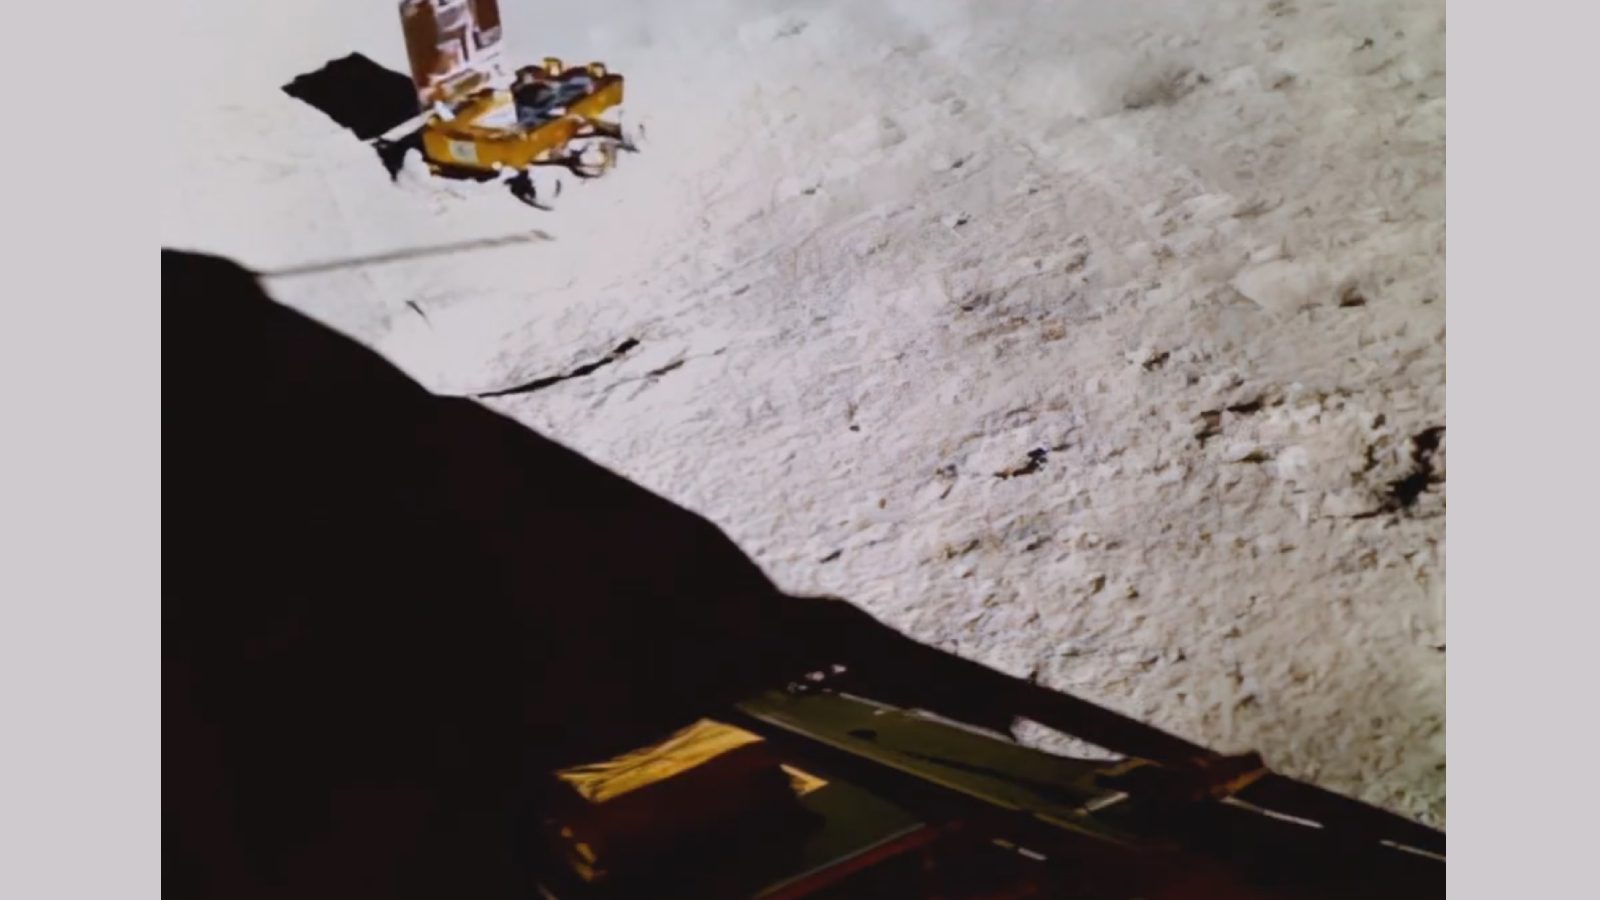 ISRO снова публикует видео, на котором пражский марсоход совершает повороты на поверхности Луны